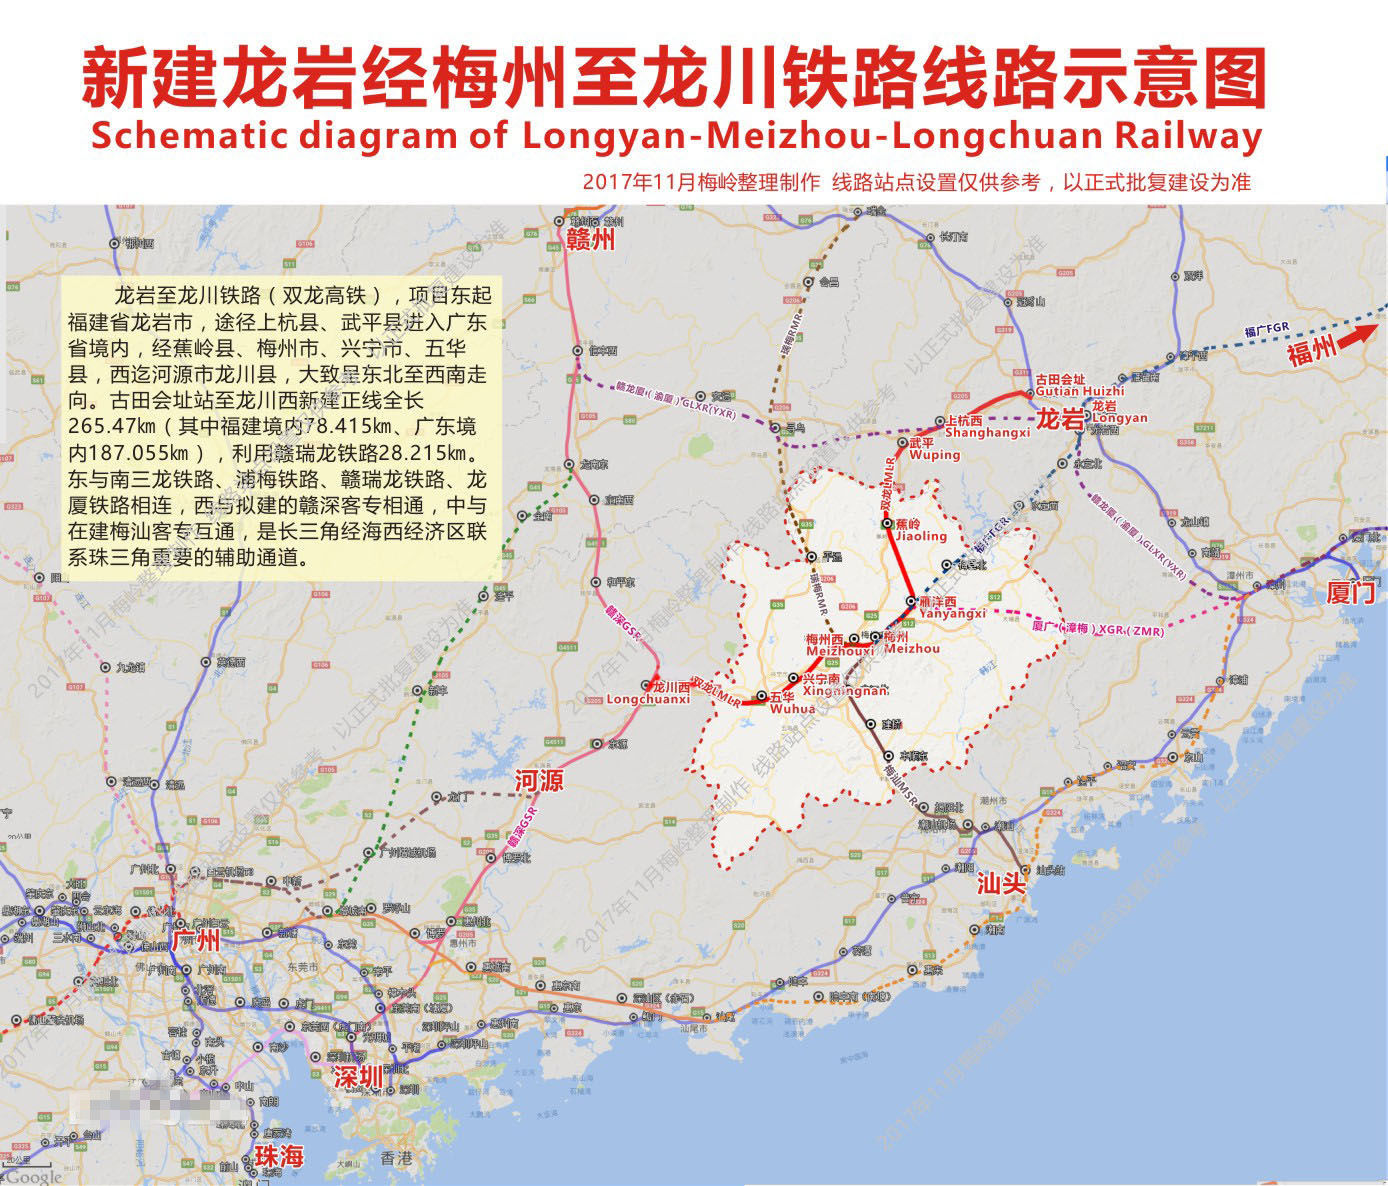 福建至广东迎来一条高铁,将改变这5座小县城的命运